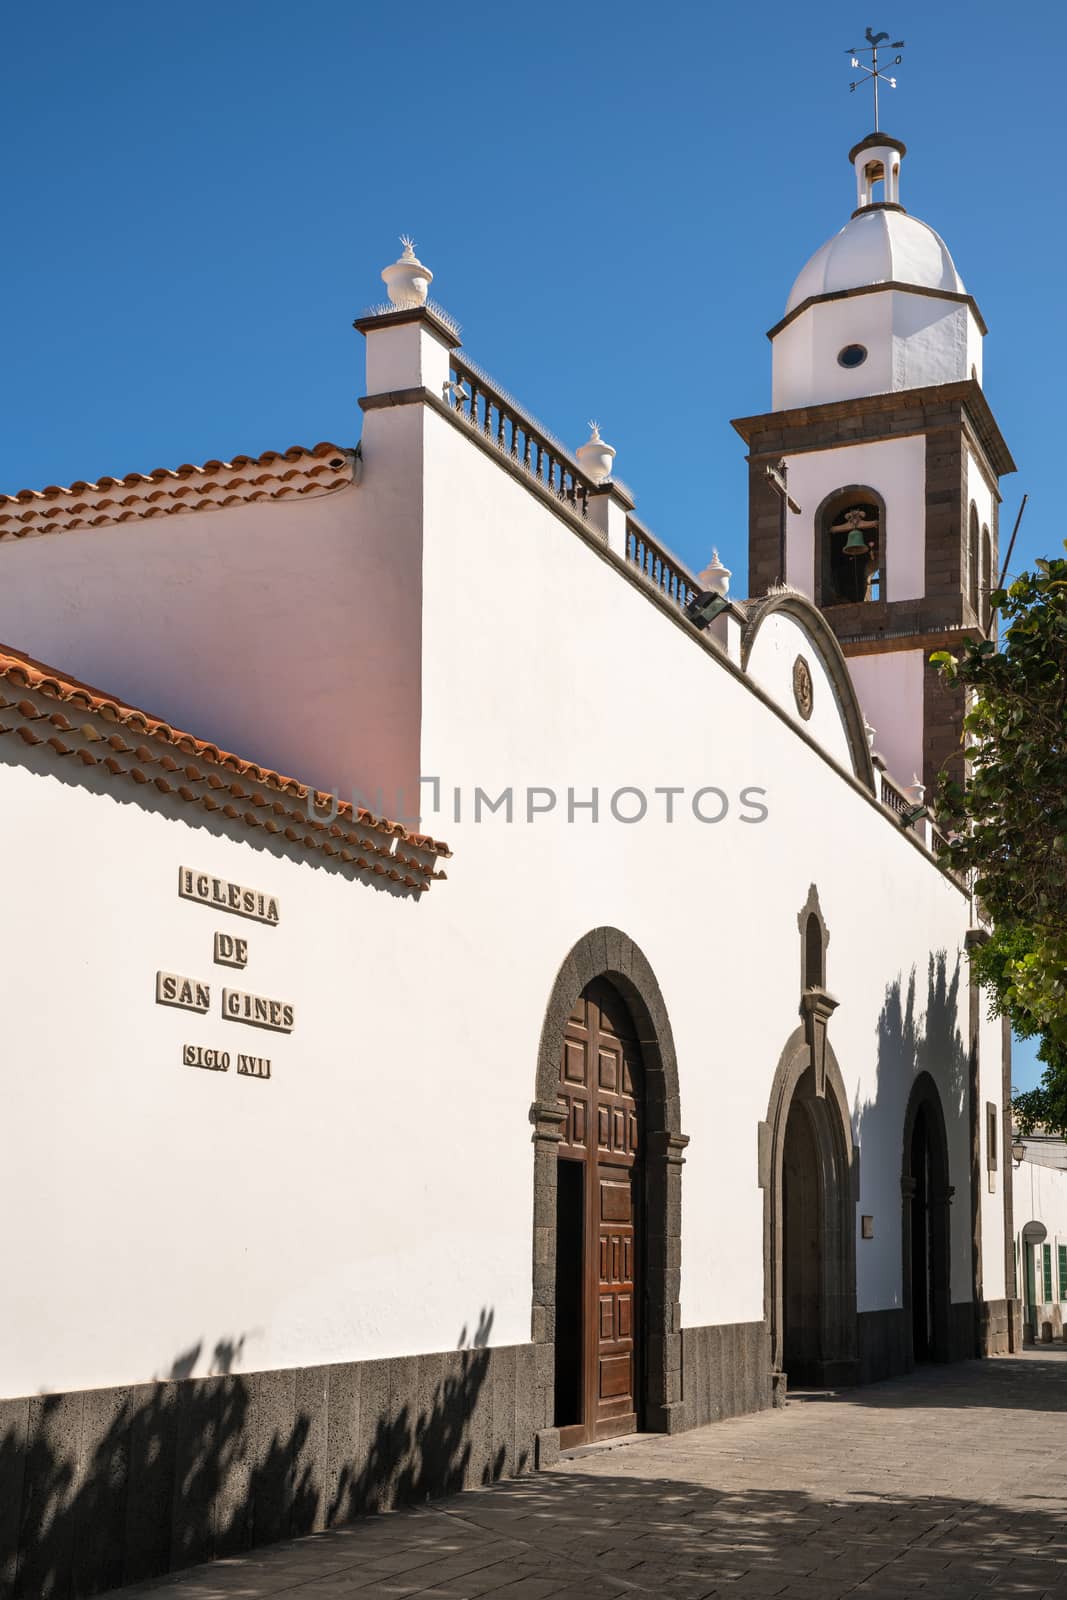 Iglesia de San Gines of Arrecife, Lanzarote, Spain by alfotokunst